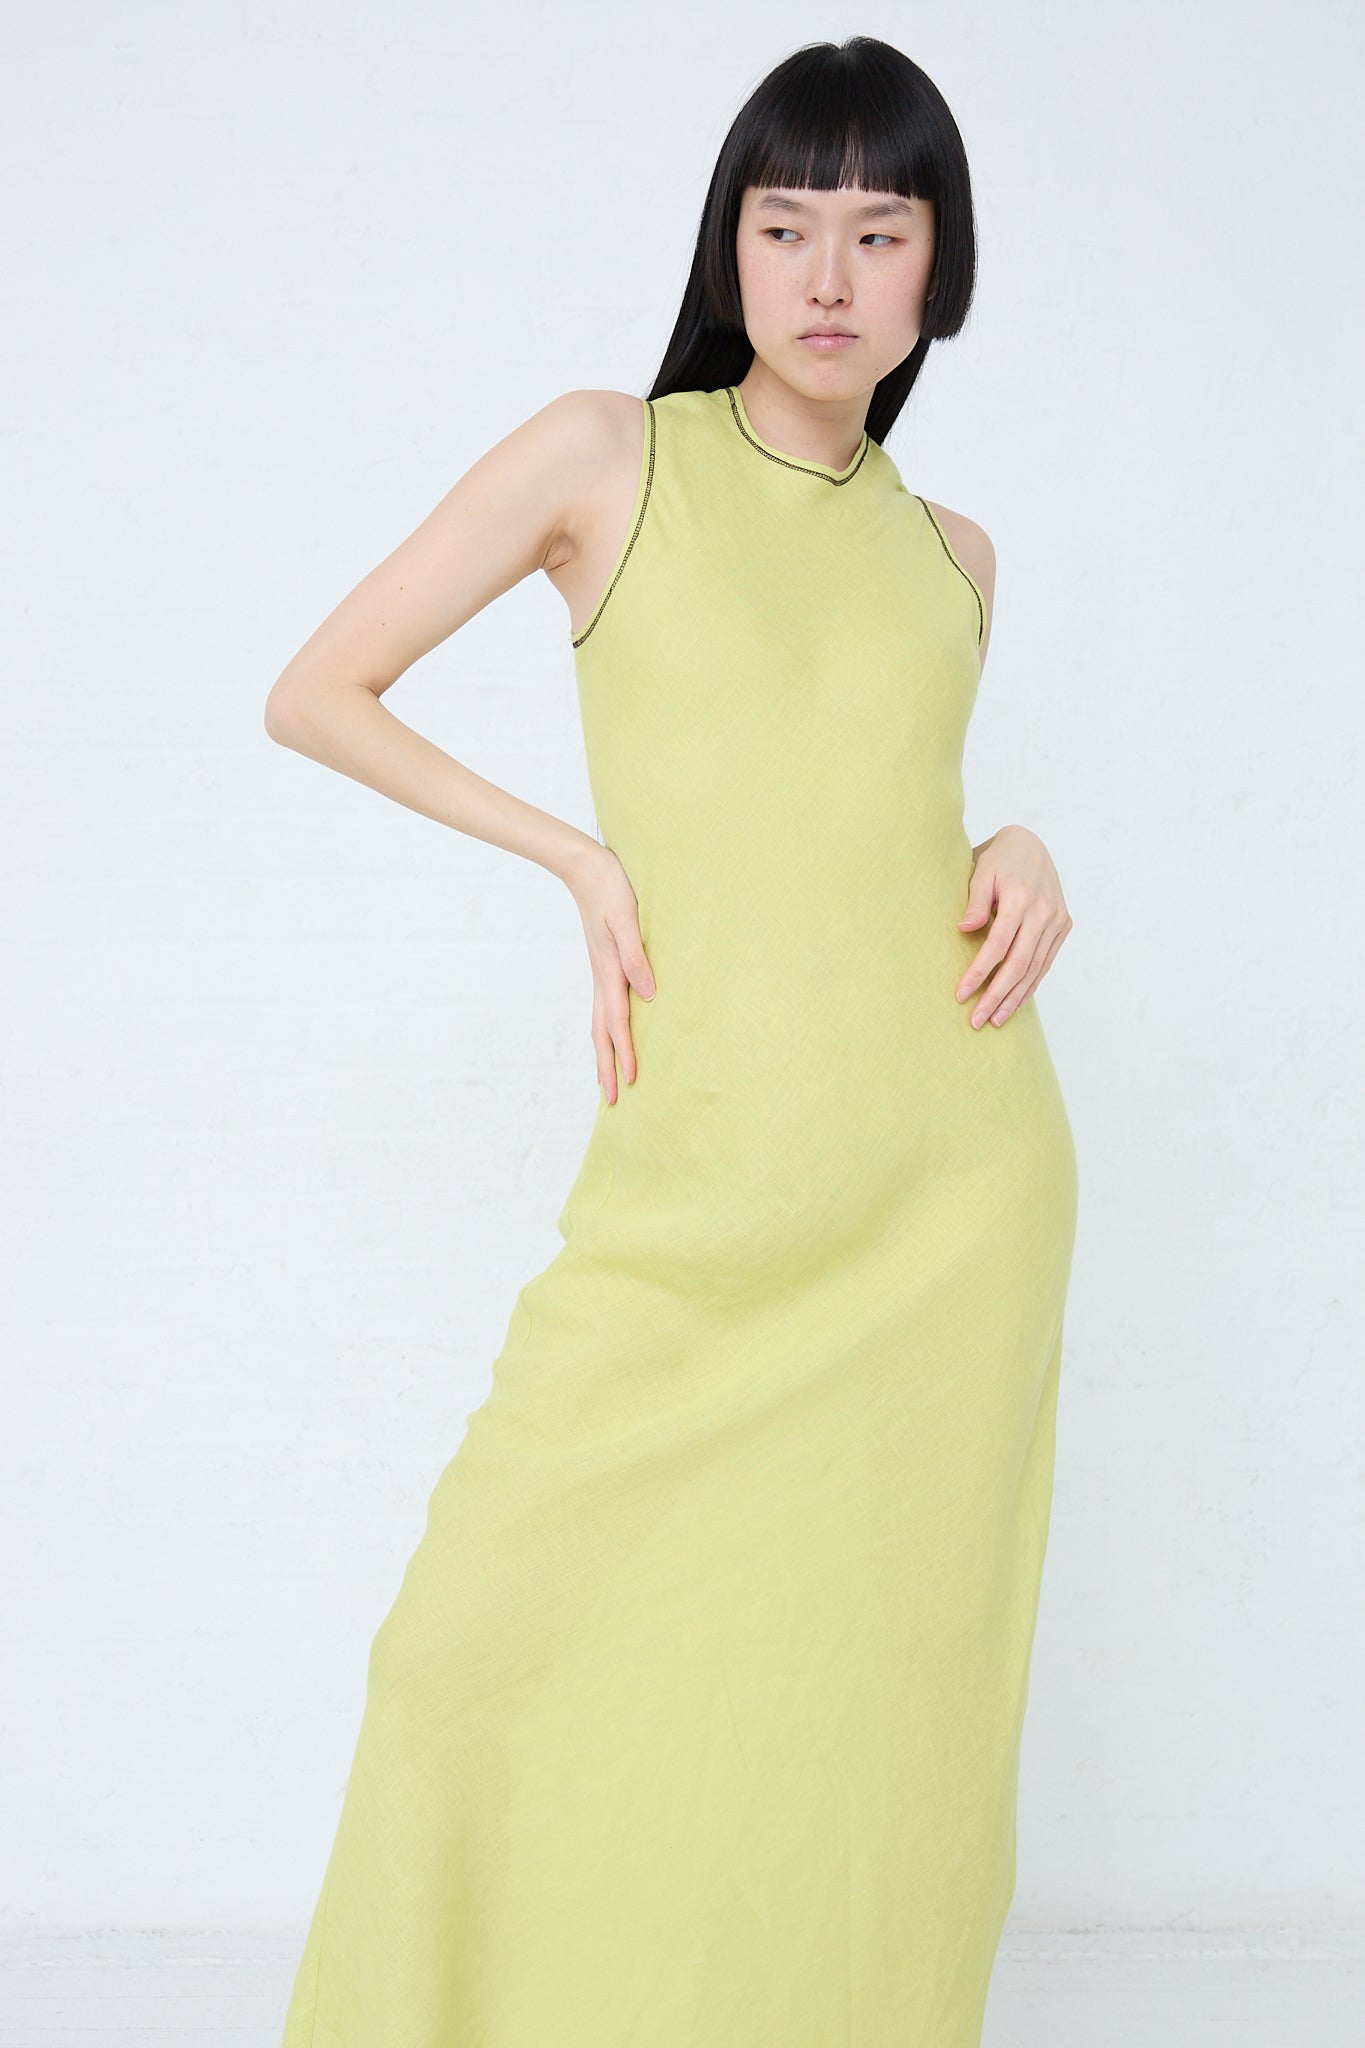 The model is wearing a Baserange Linen Dydine Tank Dress in Lime (Green).